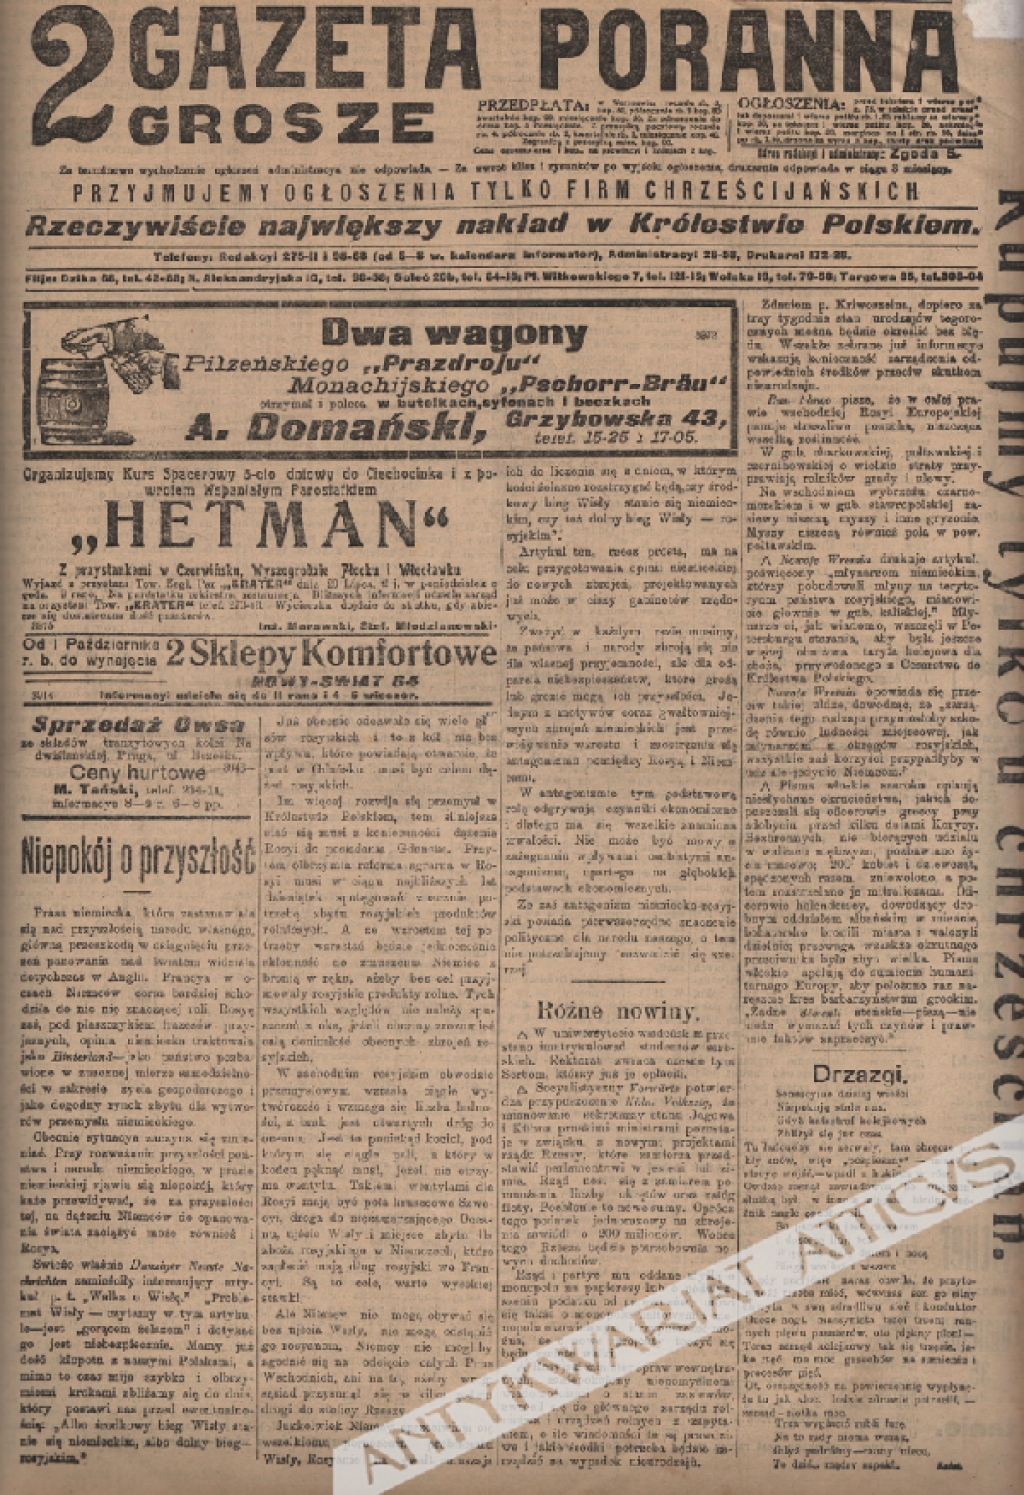 Gazeta Poranna 2 Grosze, 1914, III kwartał